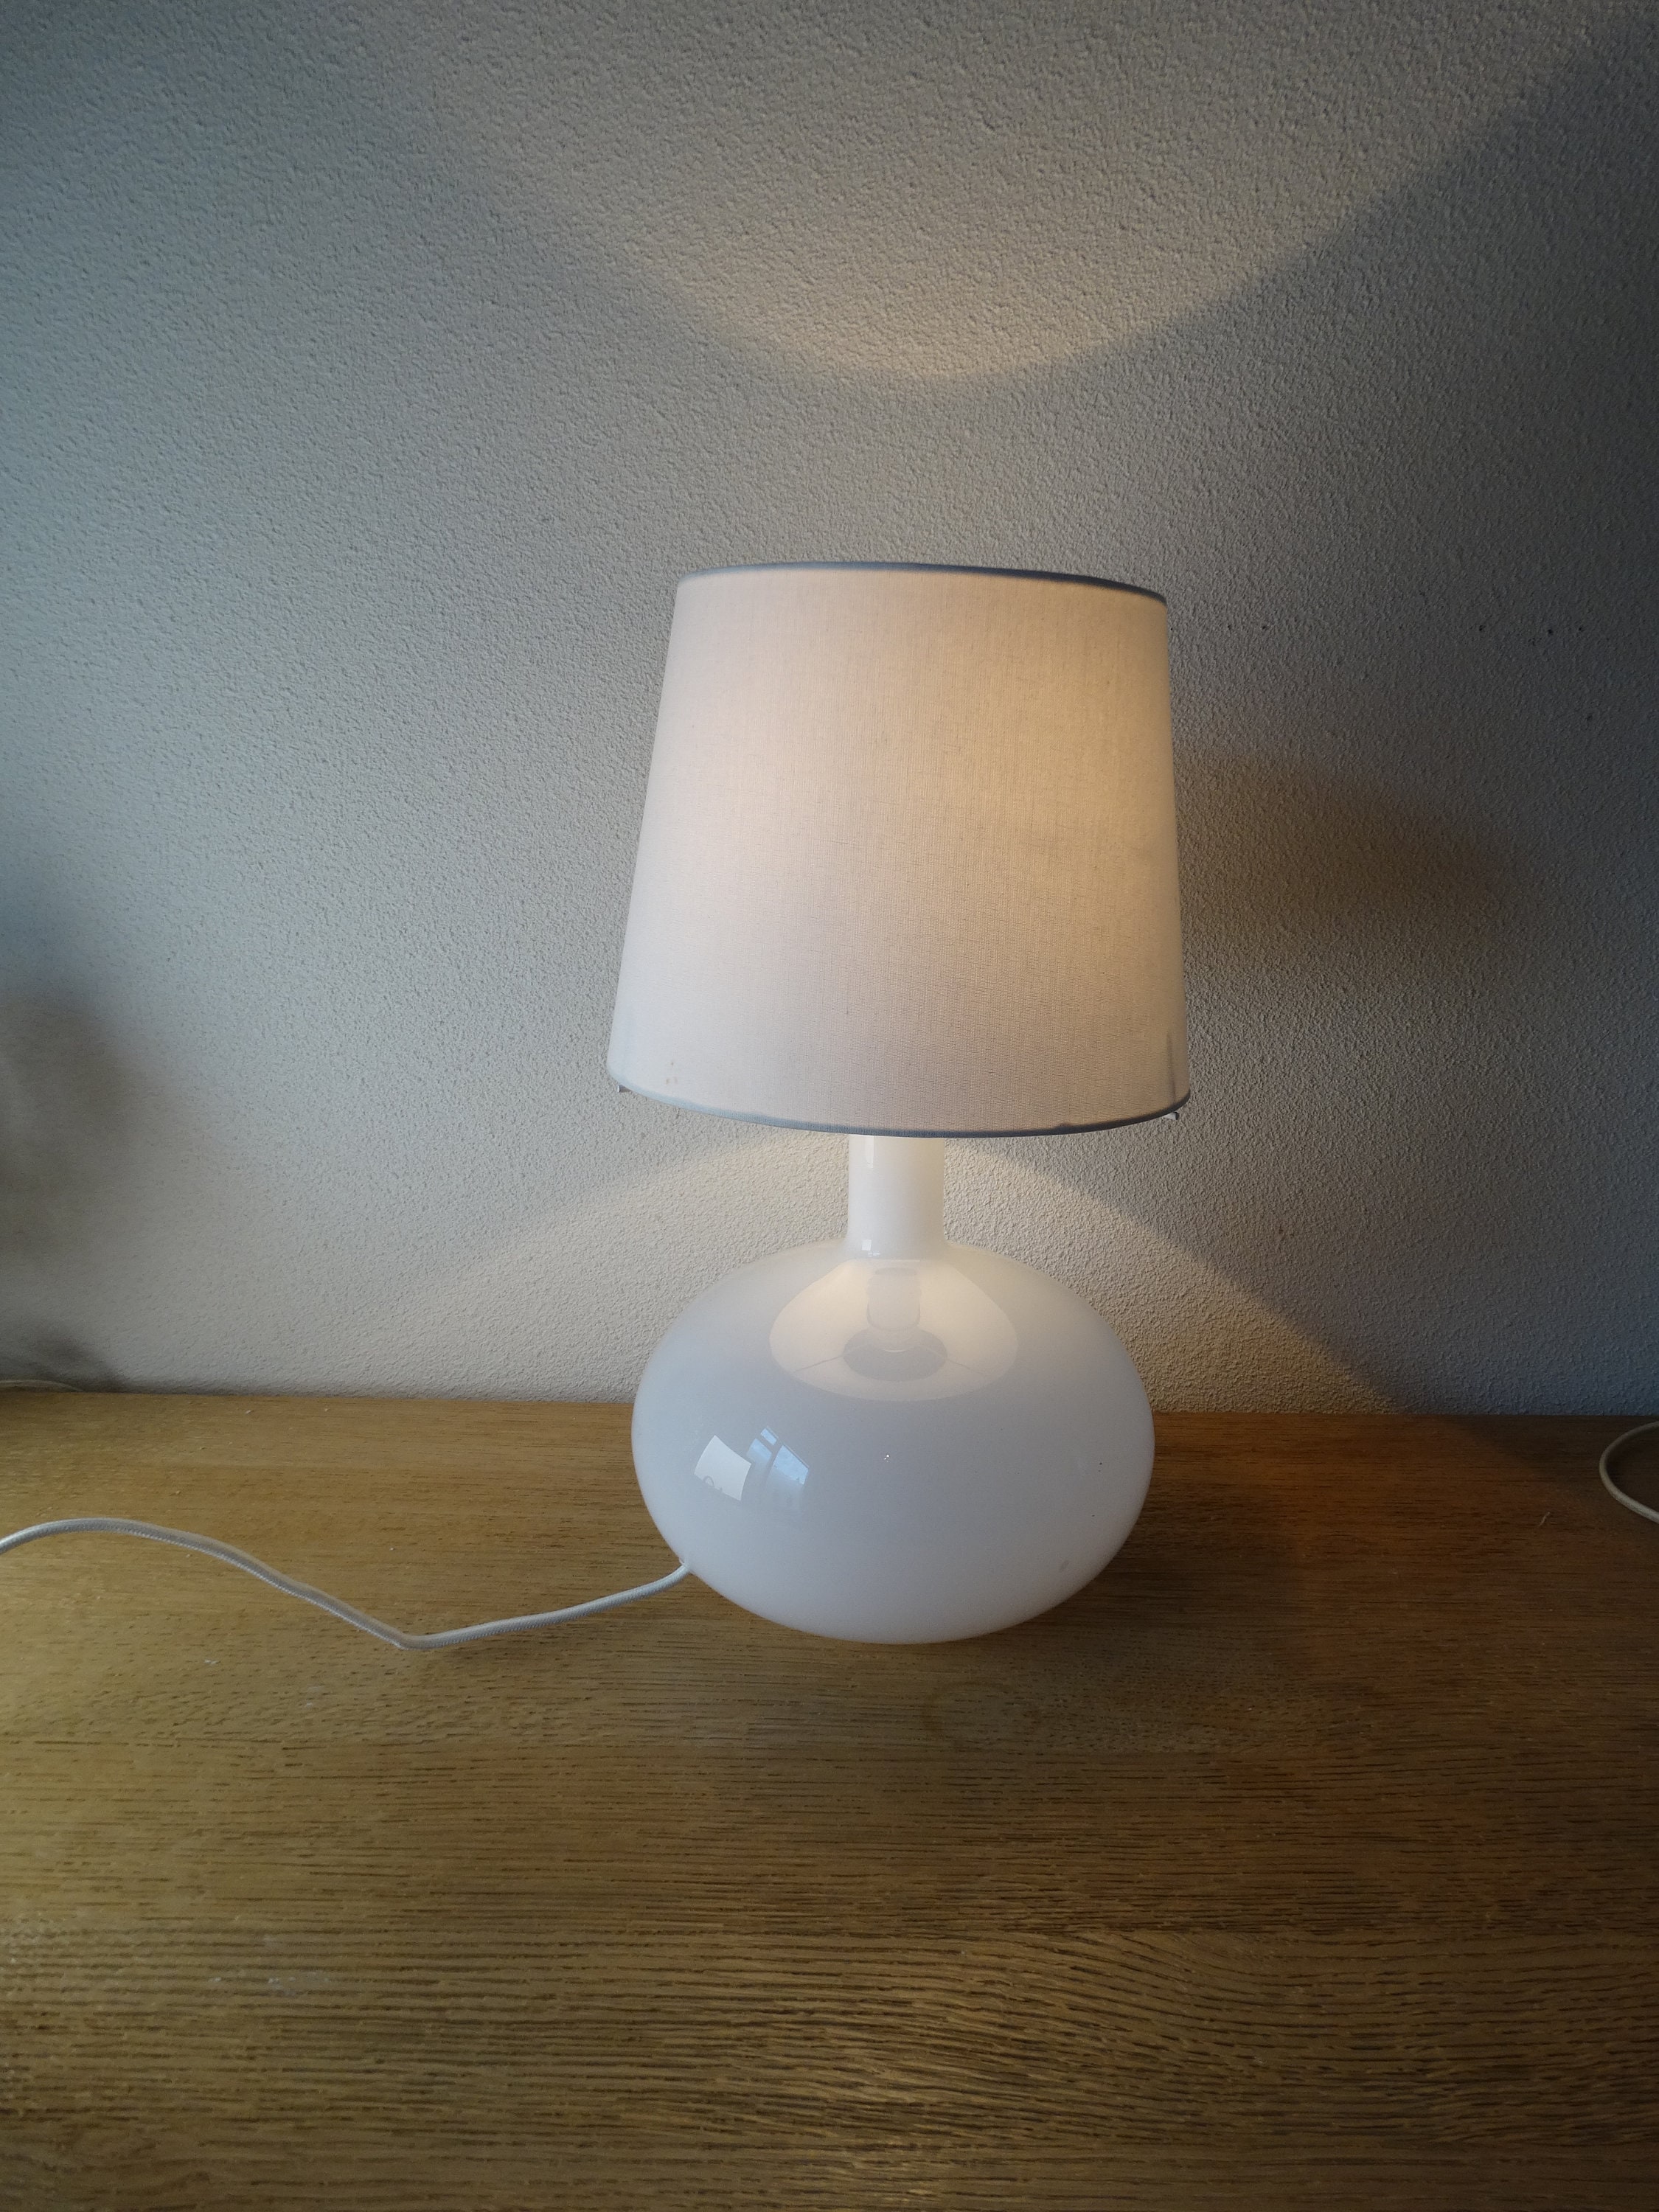 Ikea lamp shade - Etsy.de